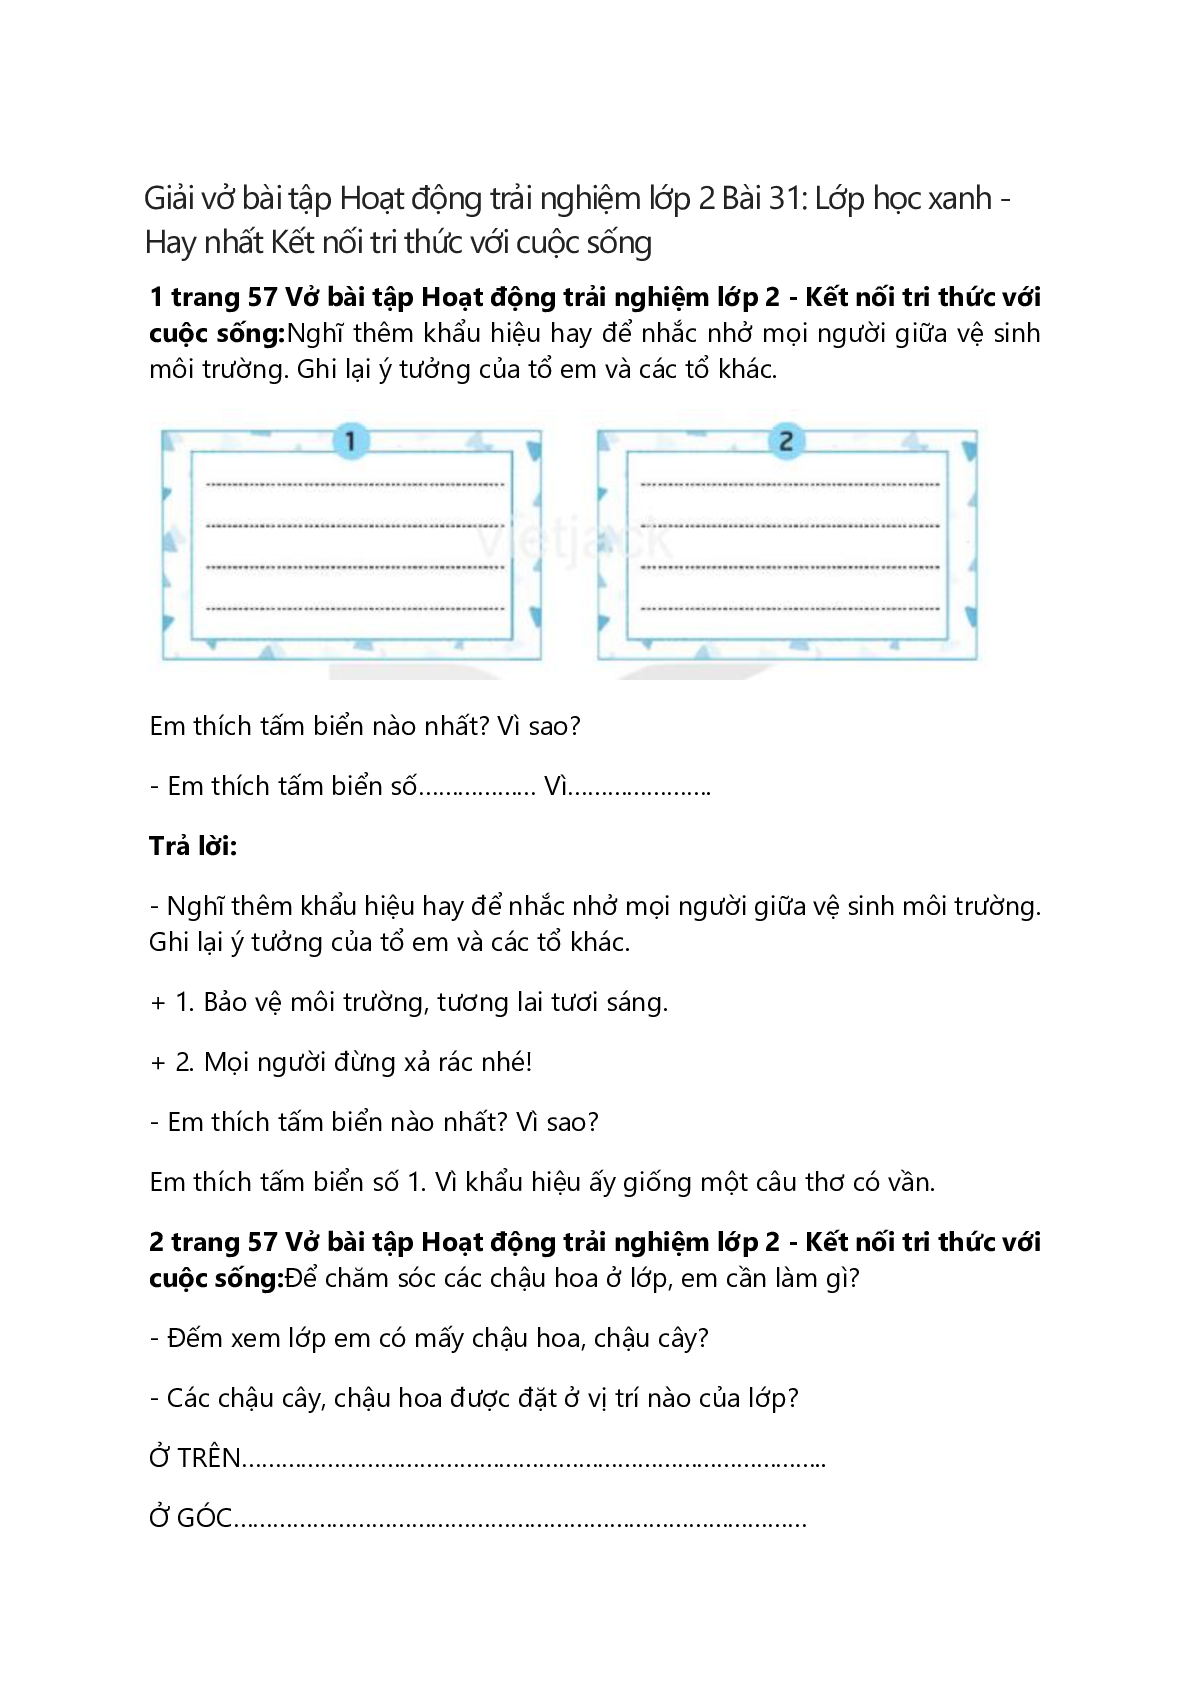 Vở bài tập Hoạt động trải nghiệm lớp 2 trang 57 Bài 31: Lớp học xanh – Kết nối tri thức (trang 1)